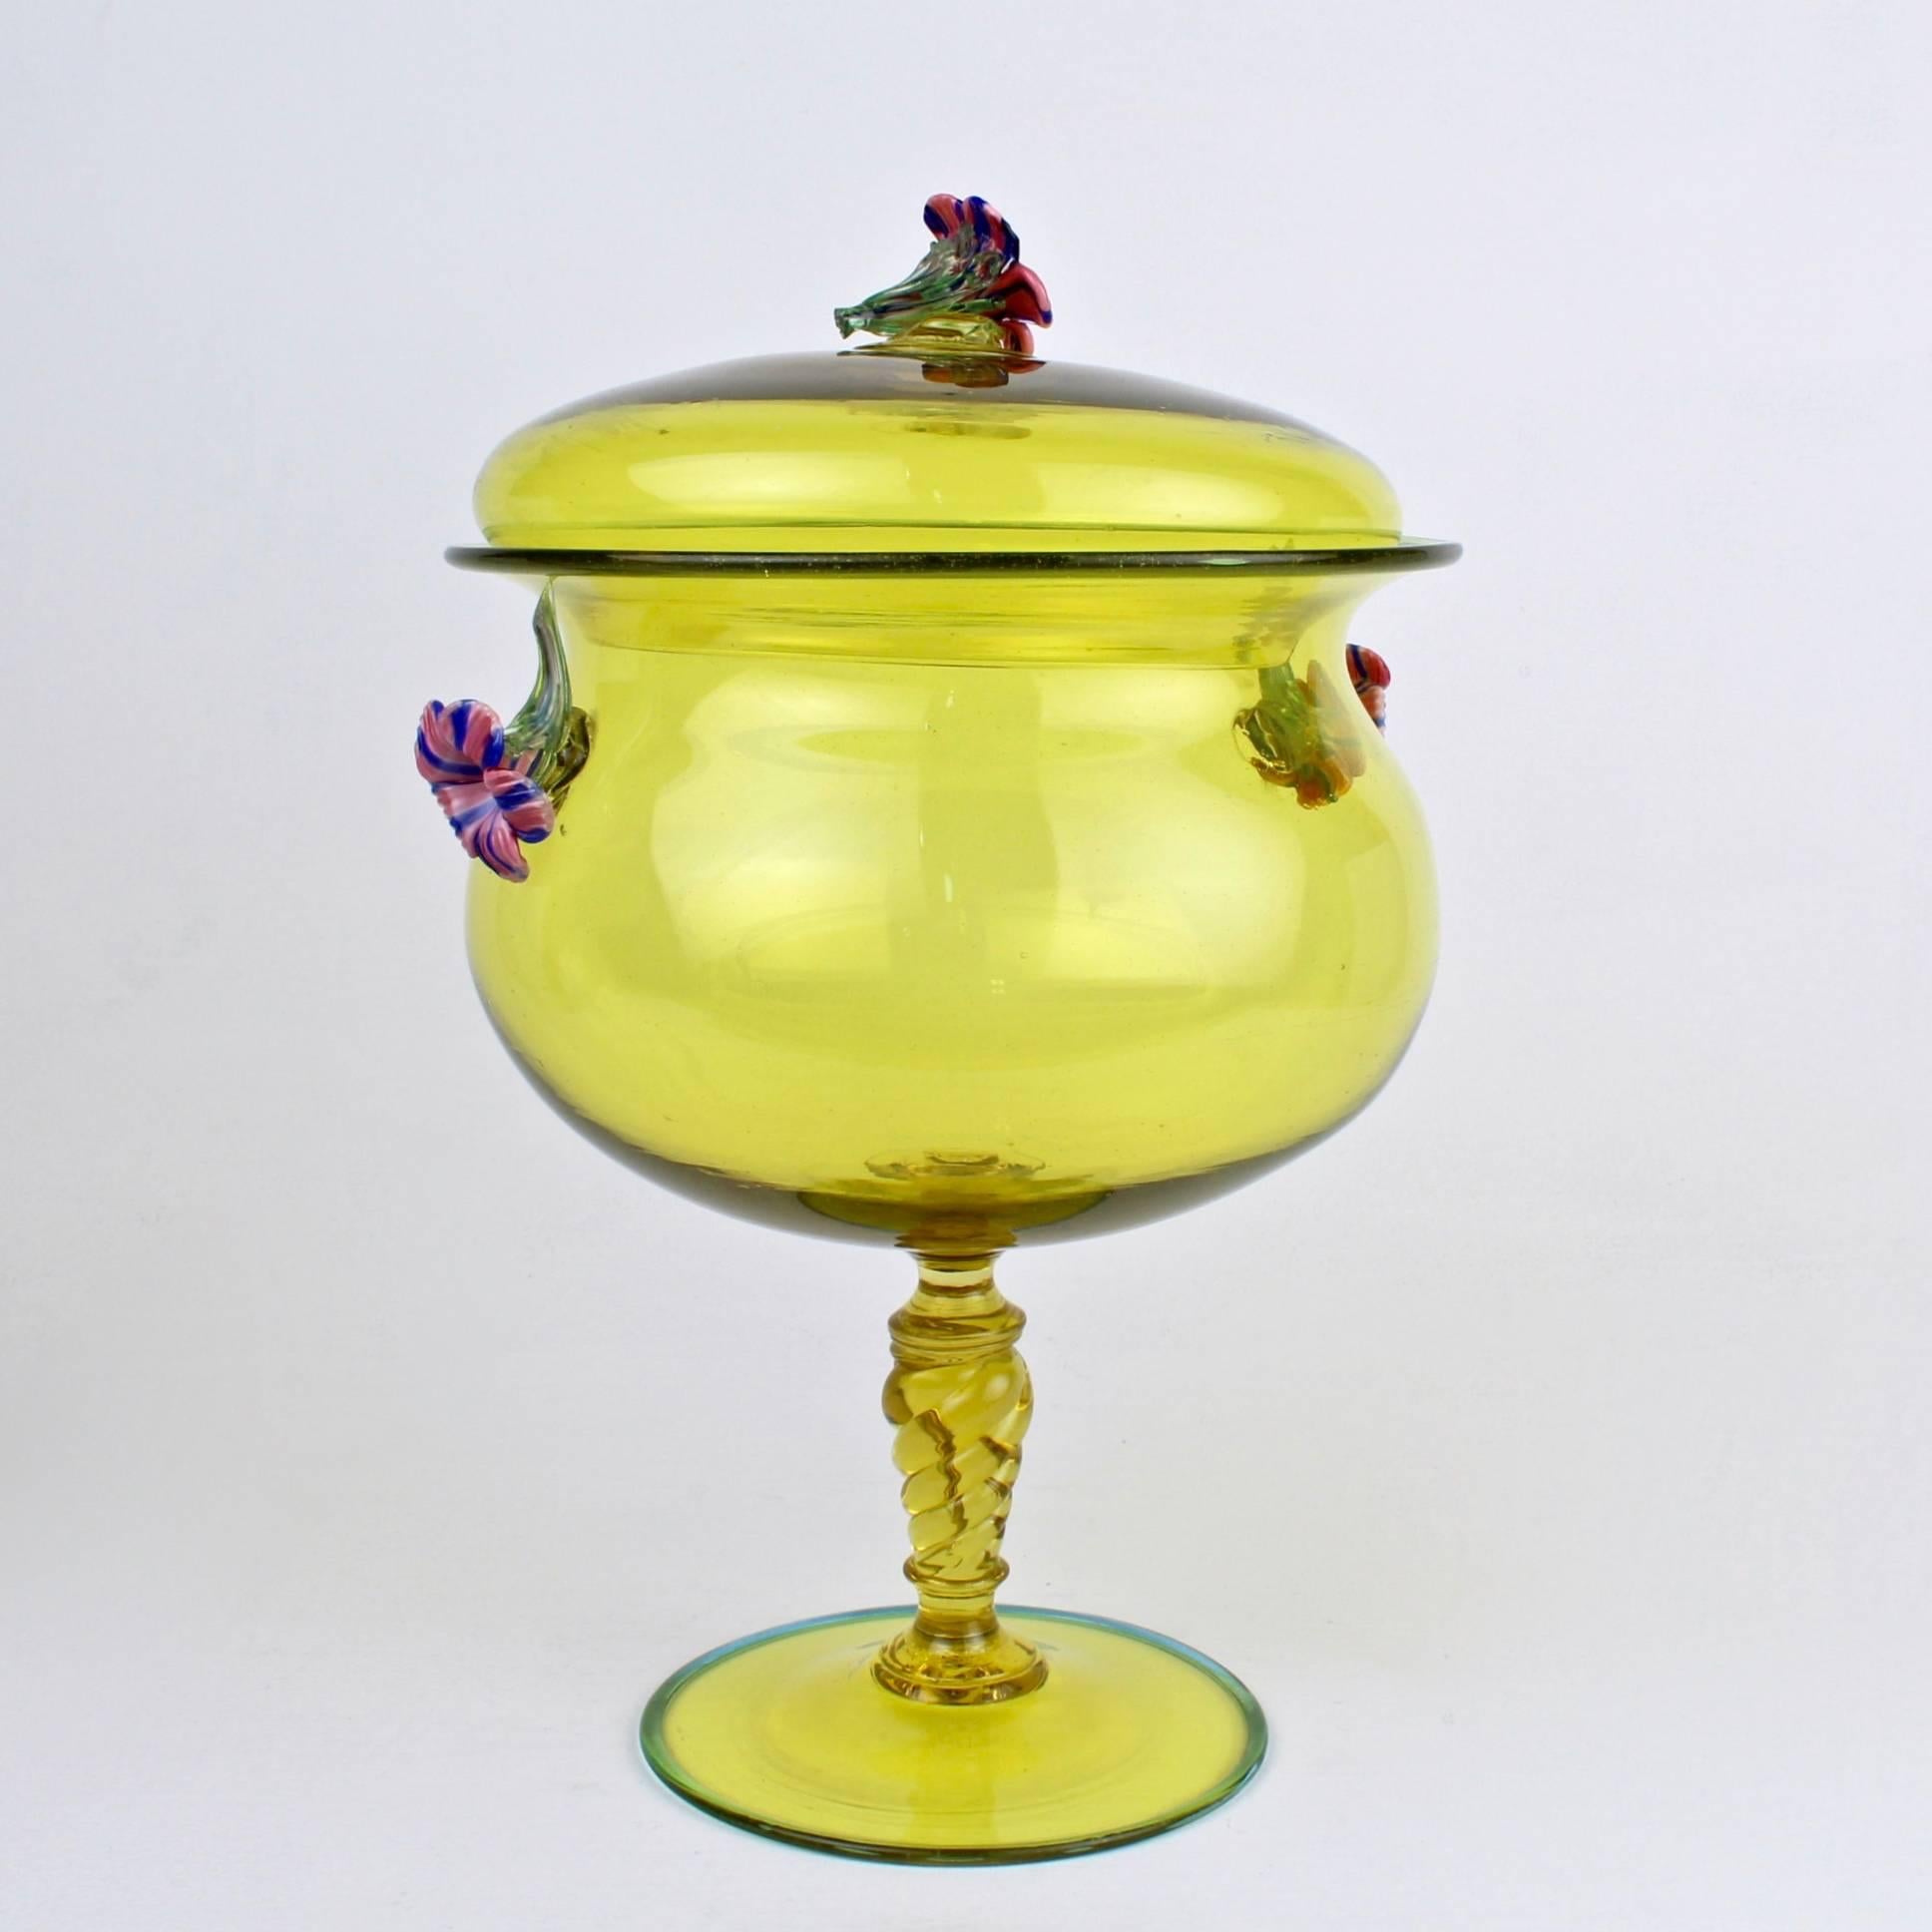 Une belle, grande et complexe compote couverte de verre vénitien en jaune canari. 

La compote présente un fleuron figuré rose et bleu appliqué et des poignées en forme de trompette de fleurs. Le couvercle repose sur une urne provenant d'une coupe